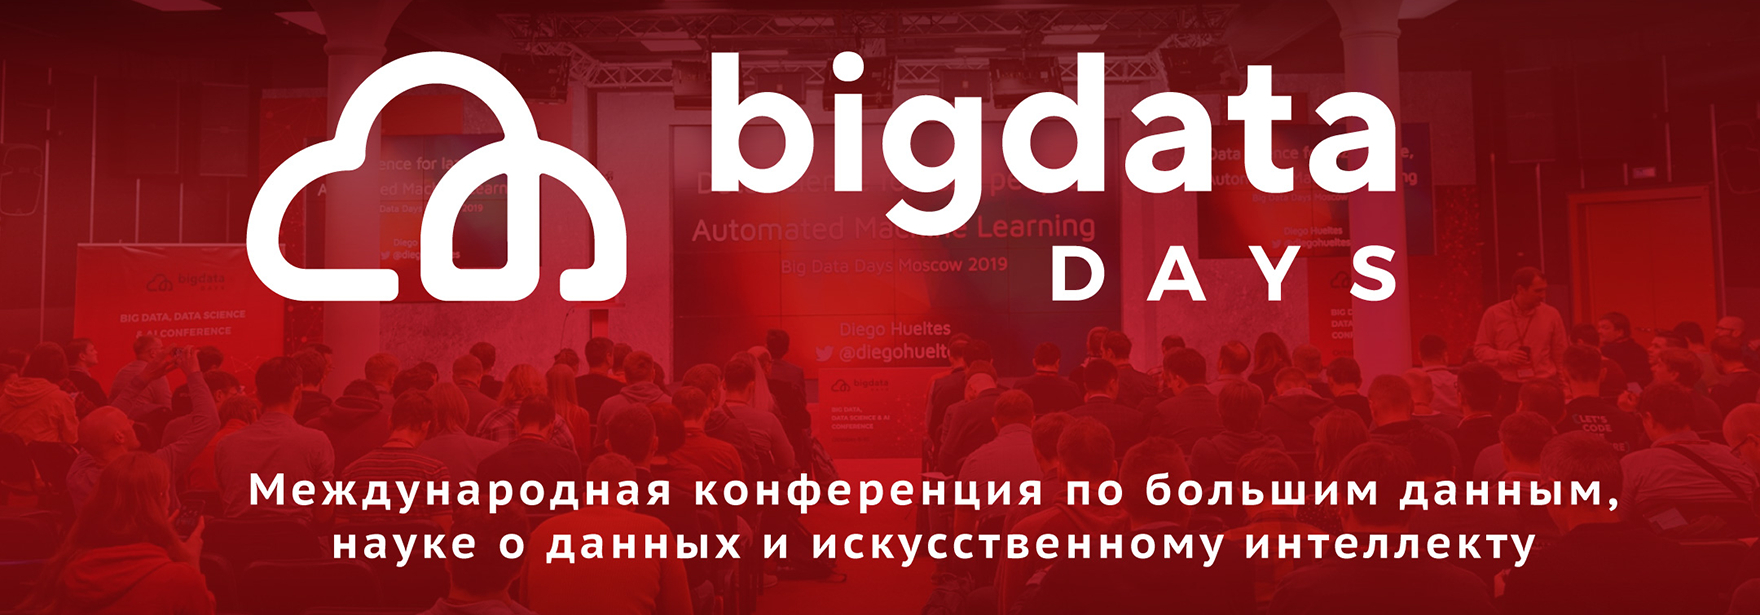 Конференция Big Data Days 2020